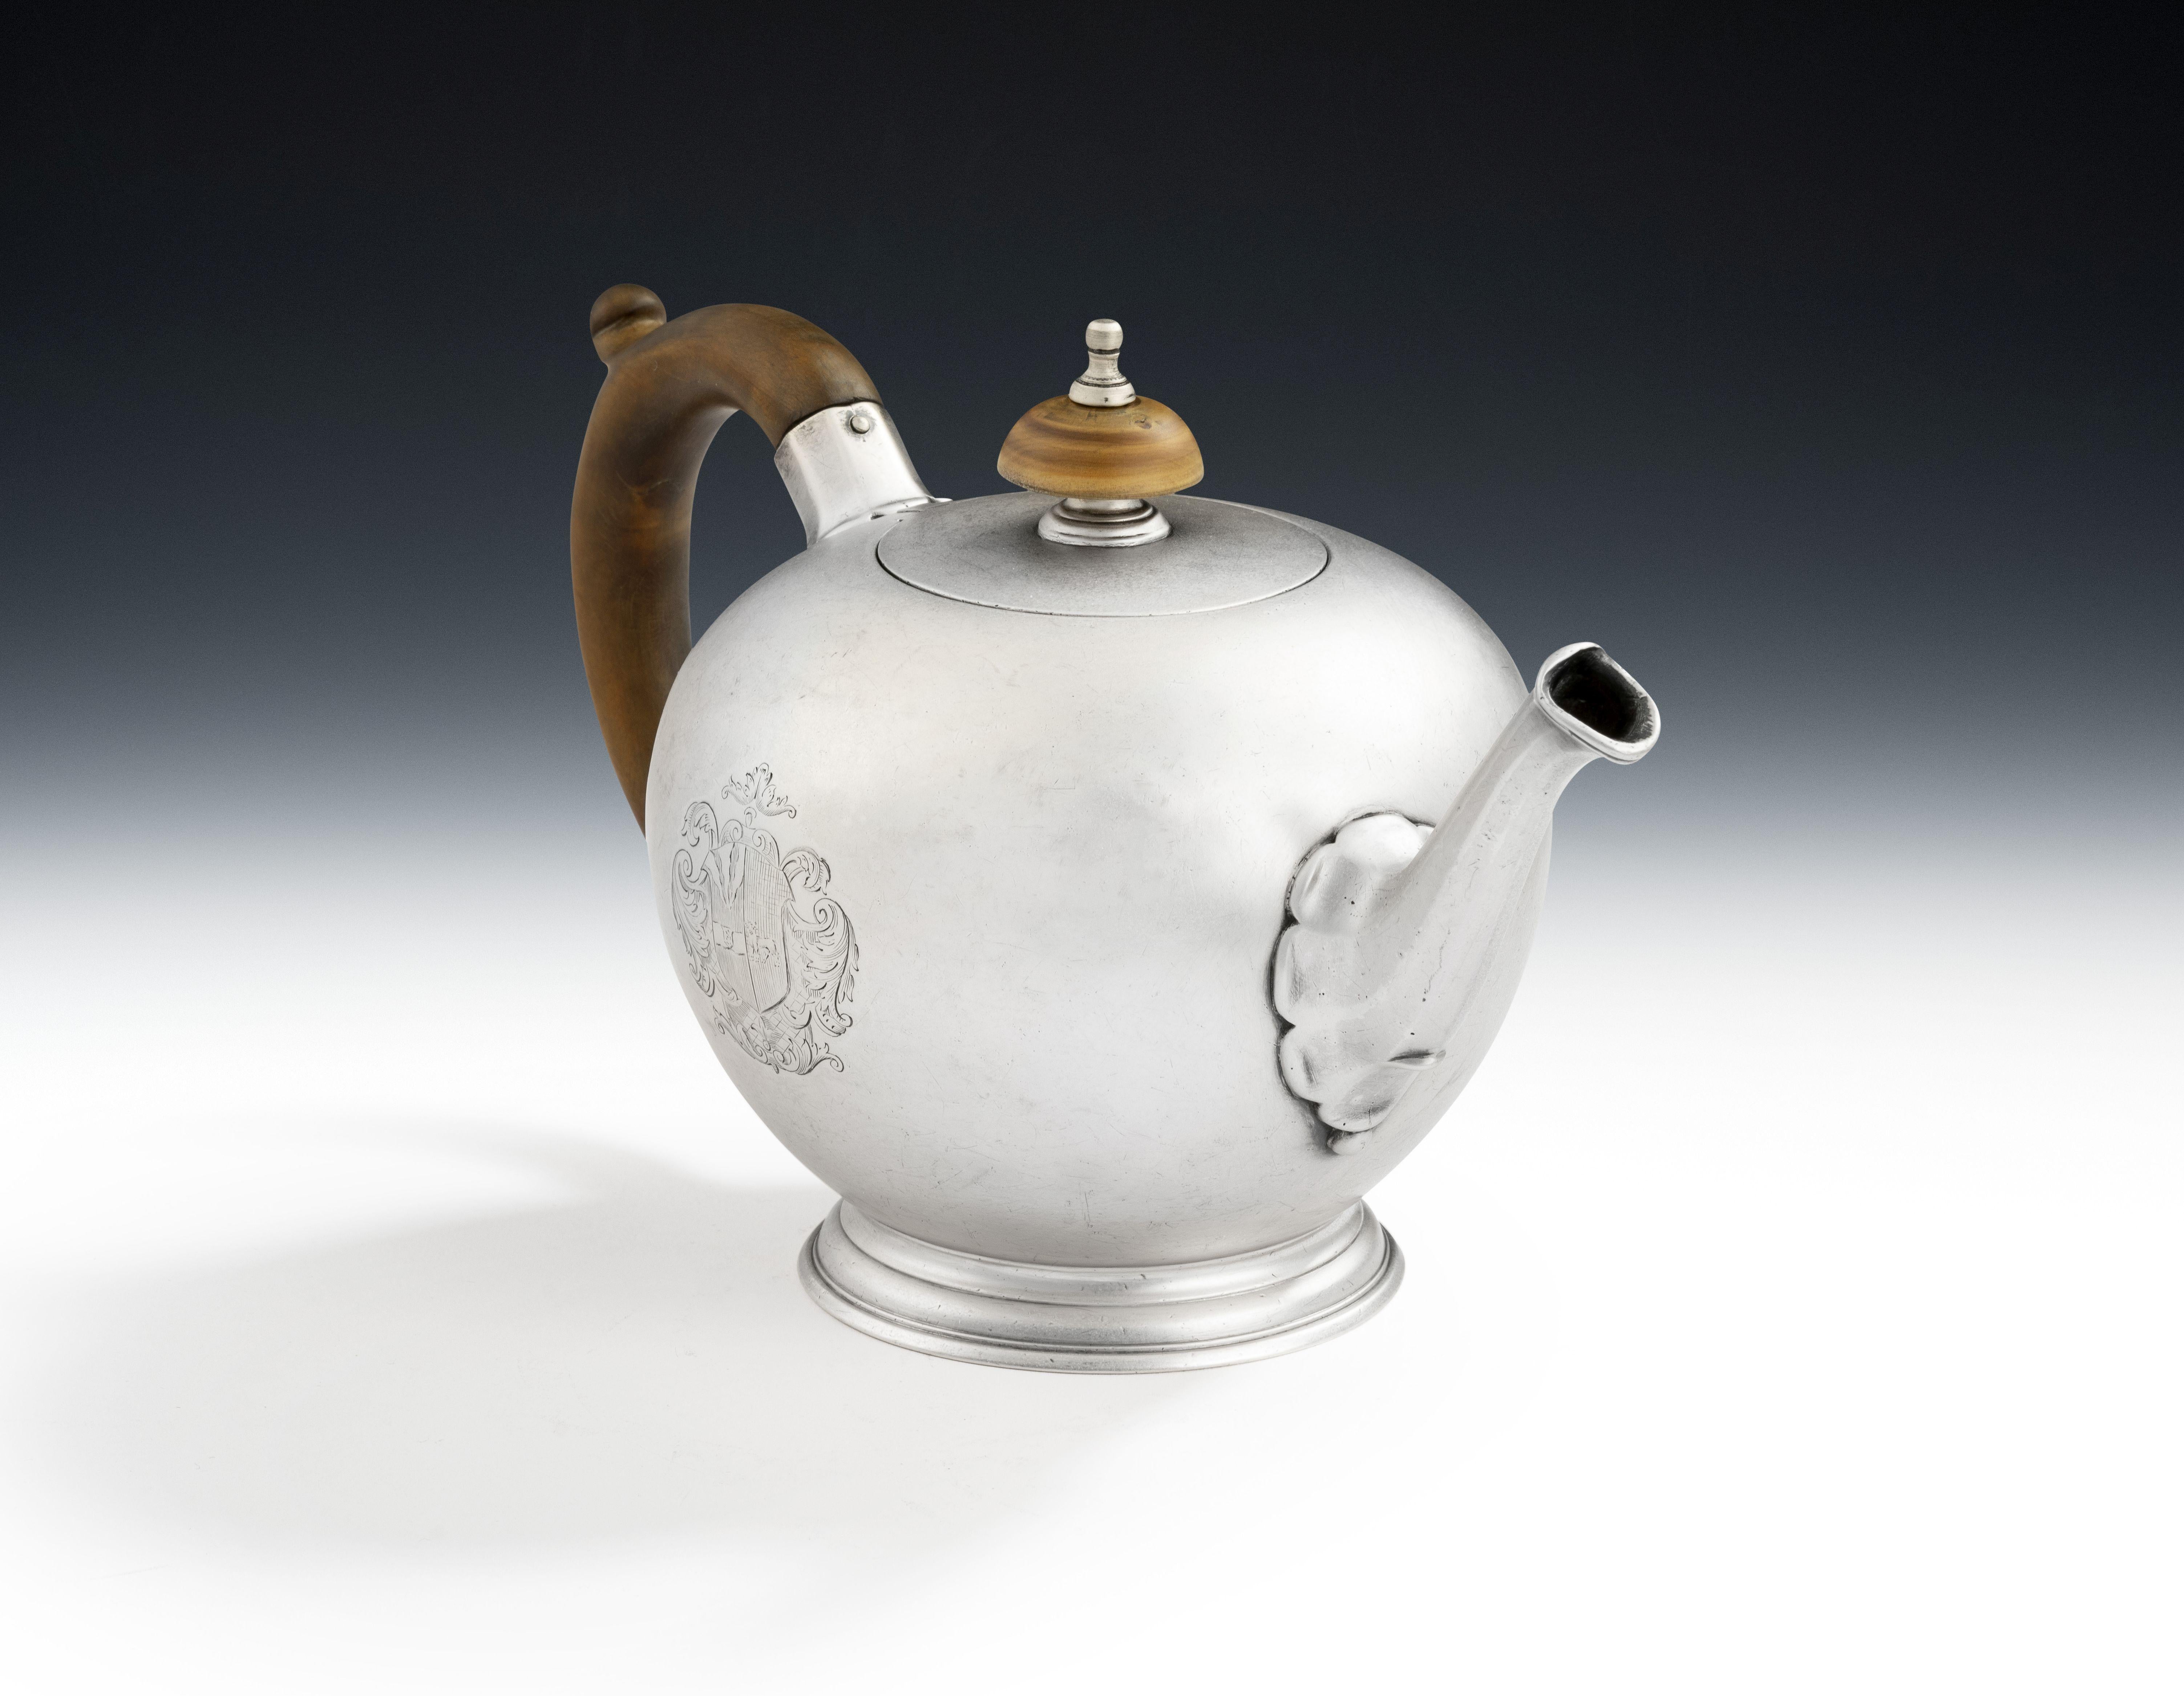 Eine sehr schöne Teekanne von John Swift aus dem Jahr 1734 in London.

Die kugelförmige Teekanne ist eine der bekanntesten Formen der George-II-Periode, und dies ist ein frühes Beispiel für diese Form.  Diese sehr schöne Teekanne hat einen